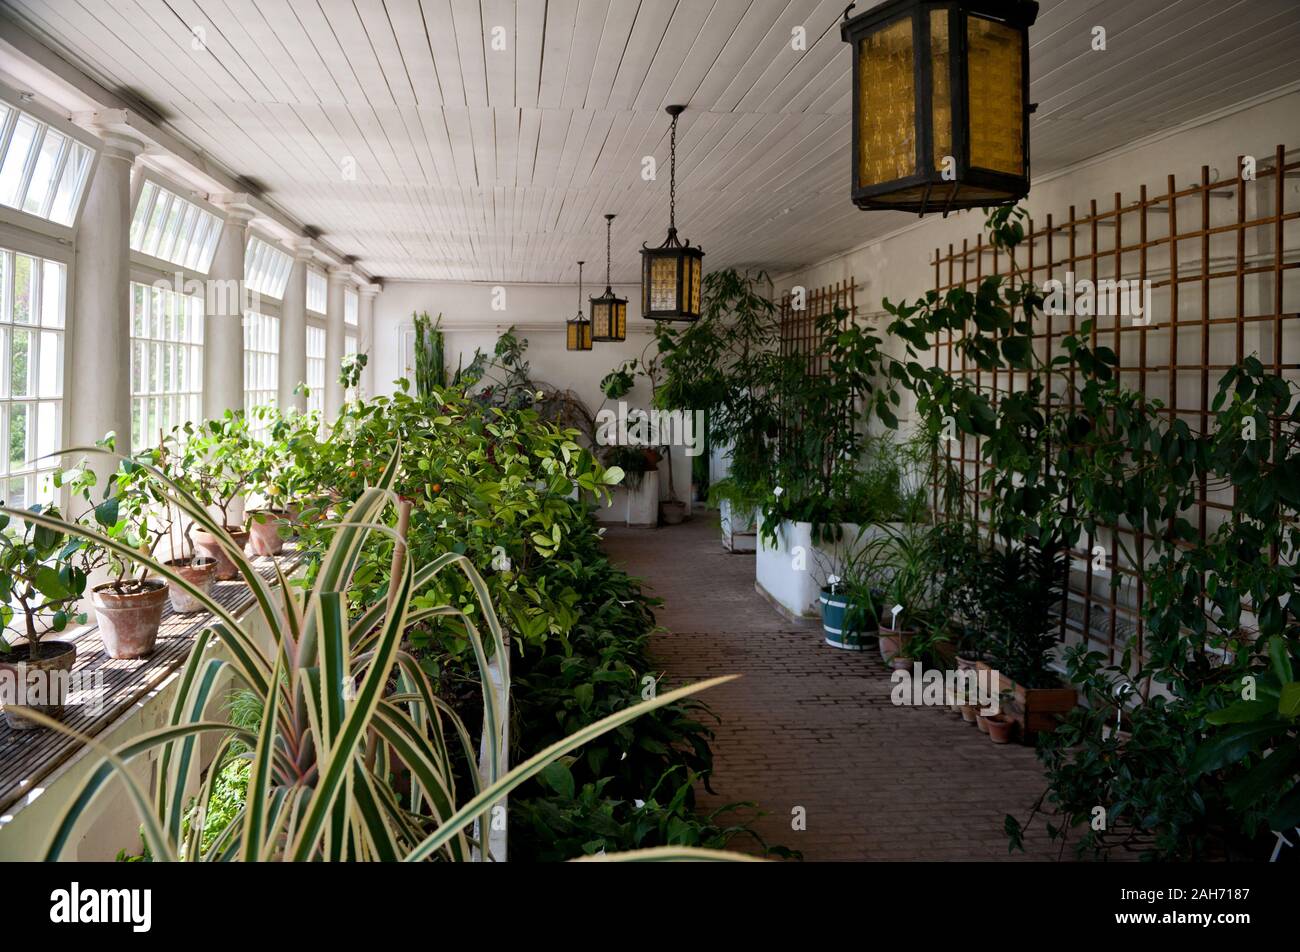 Vecchia aranciera interno con piante in Nieborów in Polonia, Europa, verde e fiori e mescolare nella luce solare proveniente attraverso grandi finestre, visitando. Foto Stock